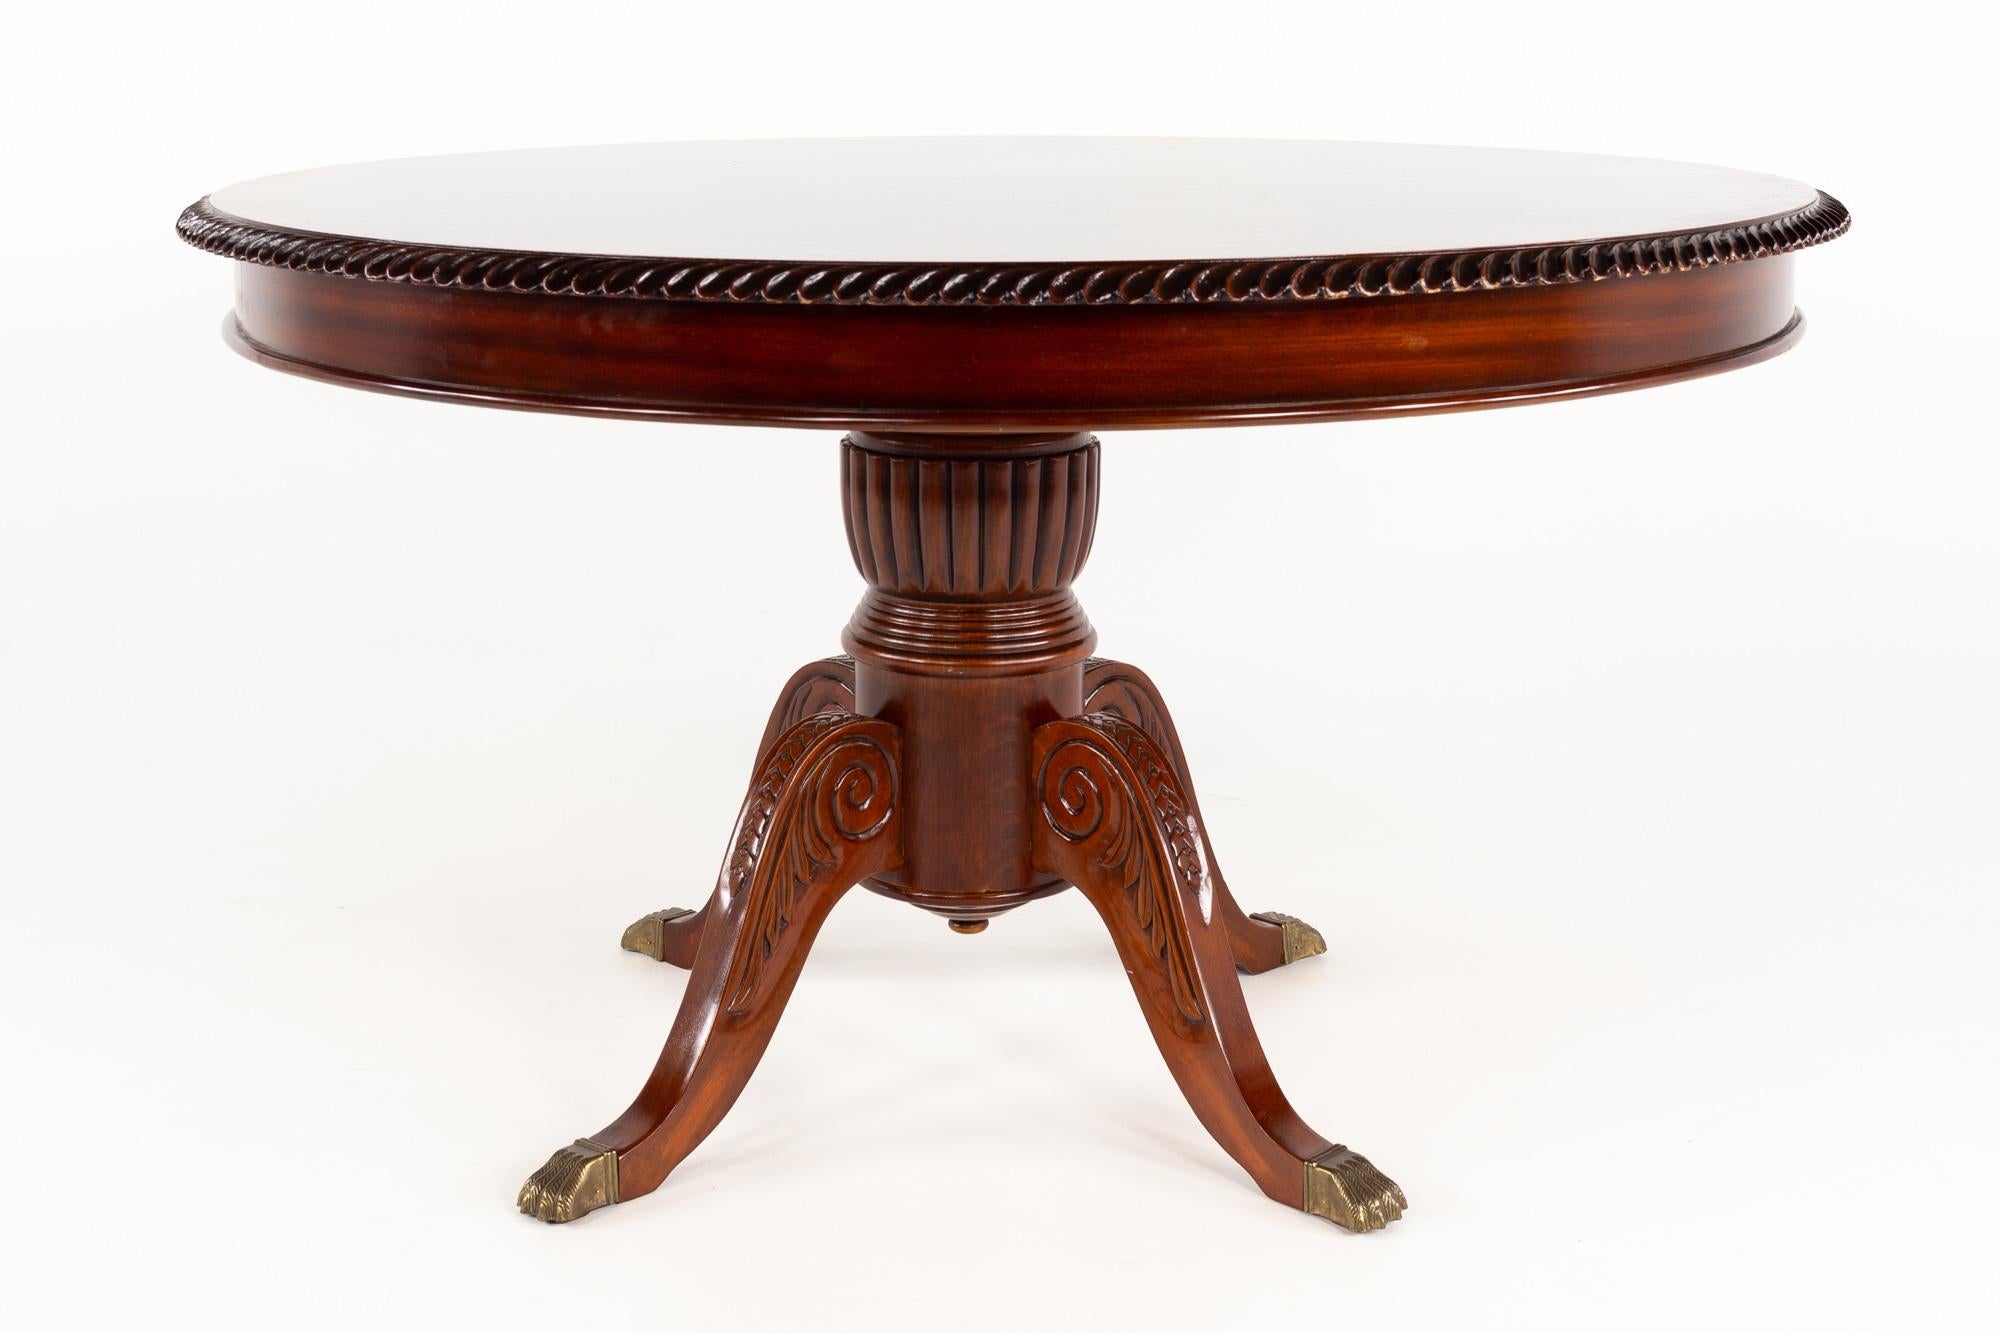 Baker Furniture Zeitgenössische Mahagoni Klauenfuß Center Konsole Tisch

Dieser Tisch misst: 52 breit x 52 tief x 20 Zoll hoch

Dieses Stück ist in sehr gutem Vintage-Zustand - Es gibt einen Kratzer auf der Tischoberfläche und einige